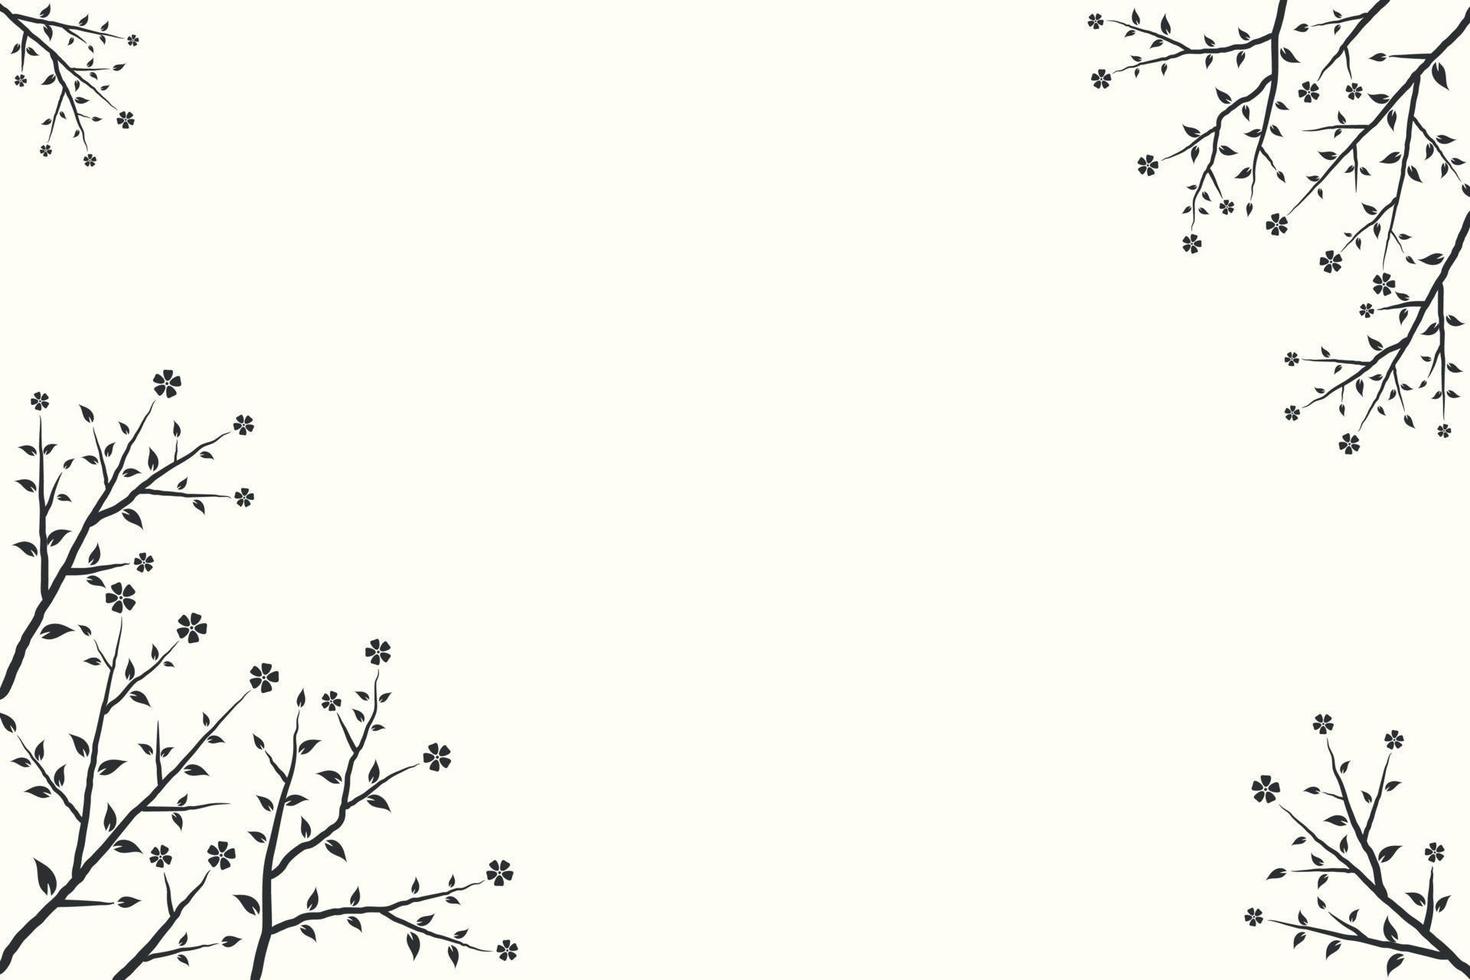 conception de fond avec des arbres et des fleurs dessinés à la main sur fond blanc vecteur